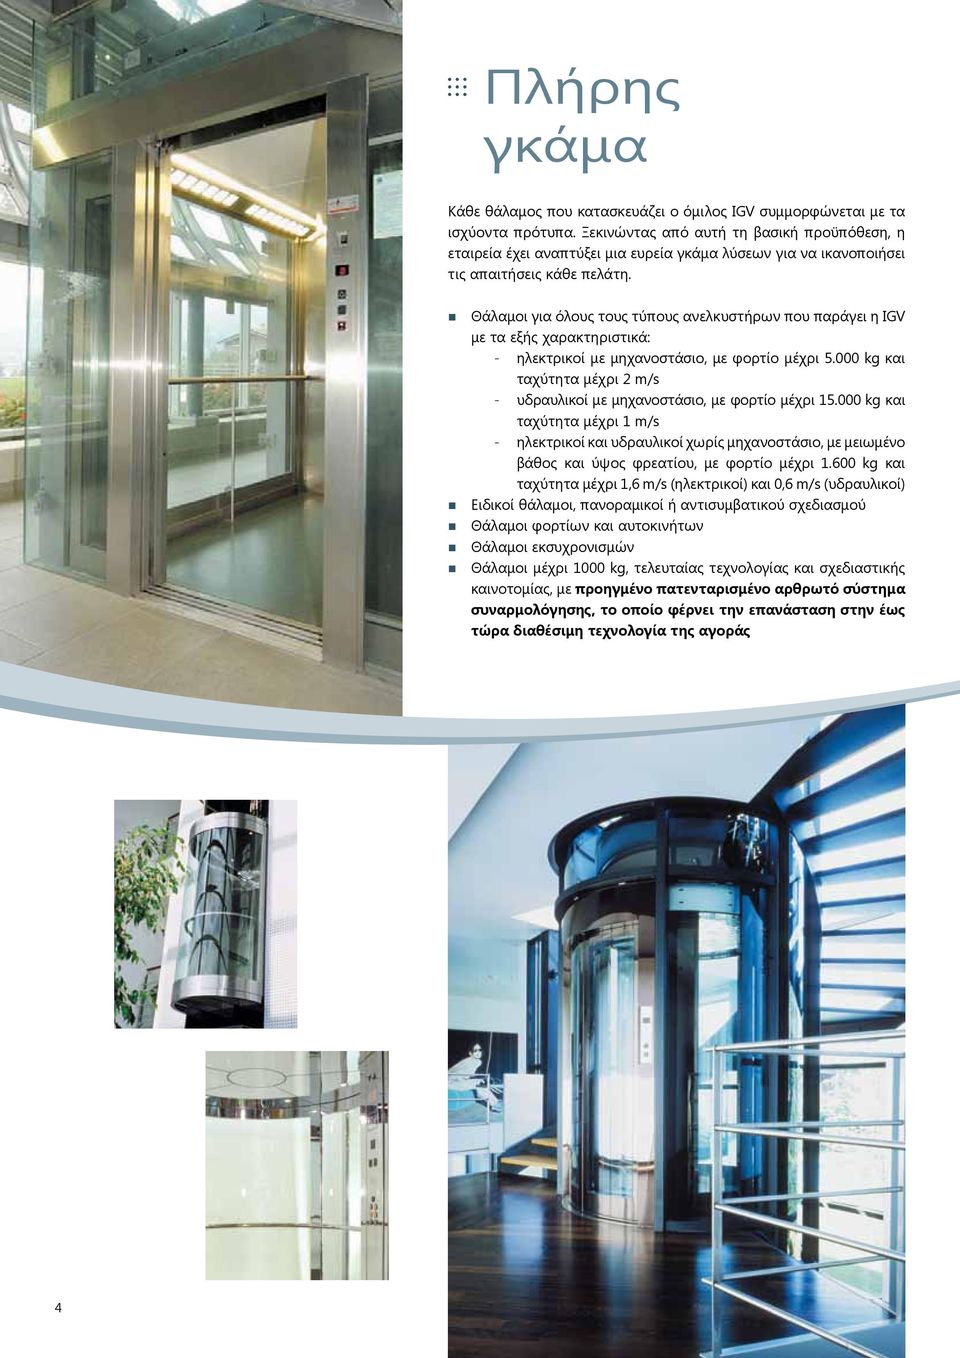 Θάλαμοι για όλους τους τύπους ανελκυστήρων που παράγει η IGV με τα εξής χαρακτηριστικά: - ηλεκτρικοί με μηχανοστάσιο, με φορτίο μέχρι 5.